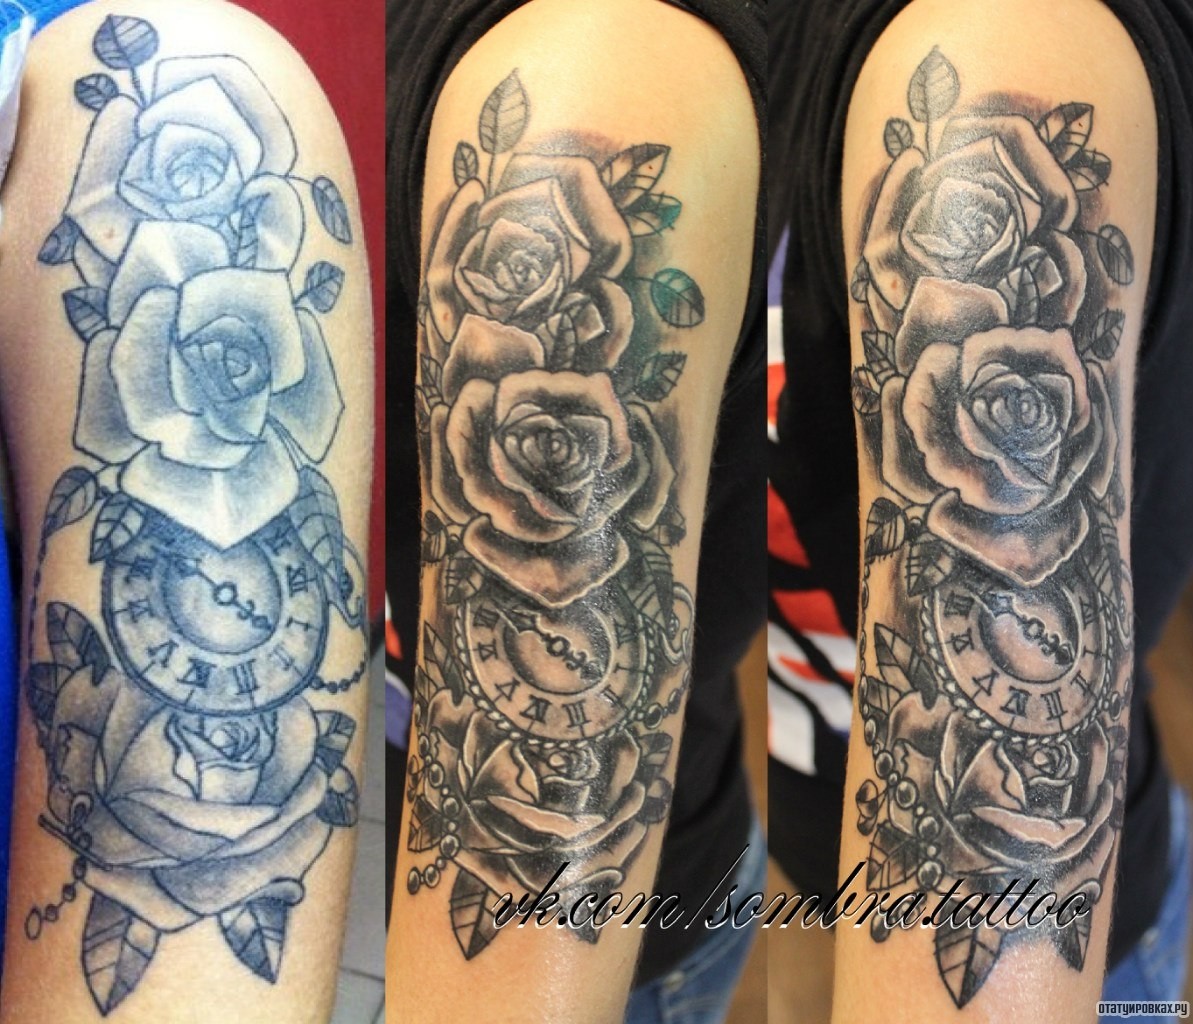 Фотография татуировки под названием «Розы и часы»